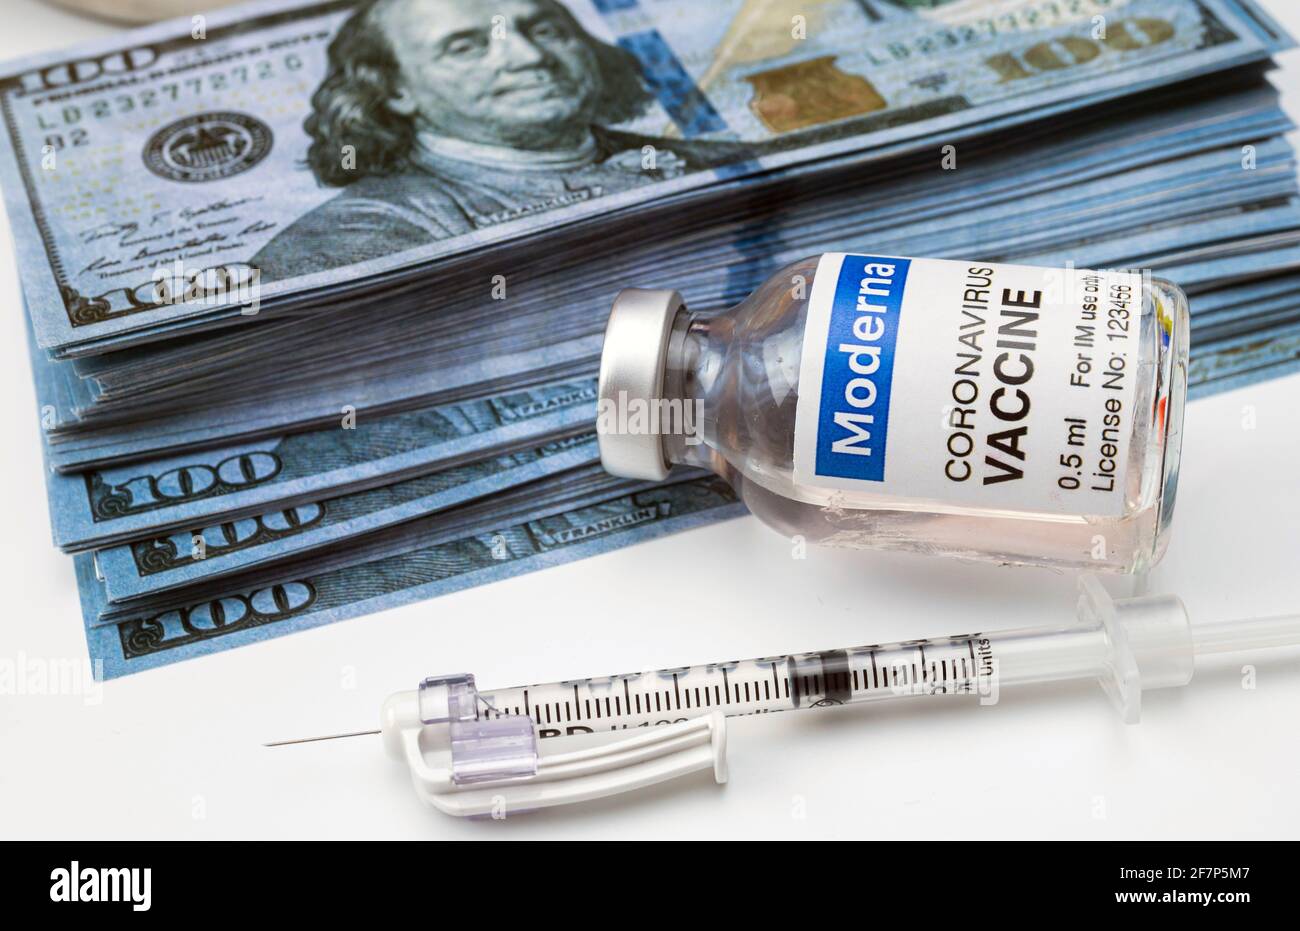 Vaccin contre le coronavirus Covid-19 pour le plan de vaccination avec billets de banque, image conceptuelle Banque D'Images